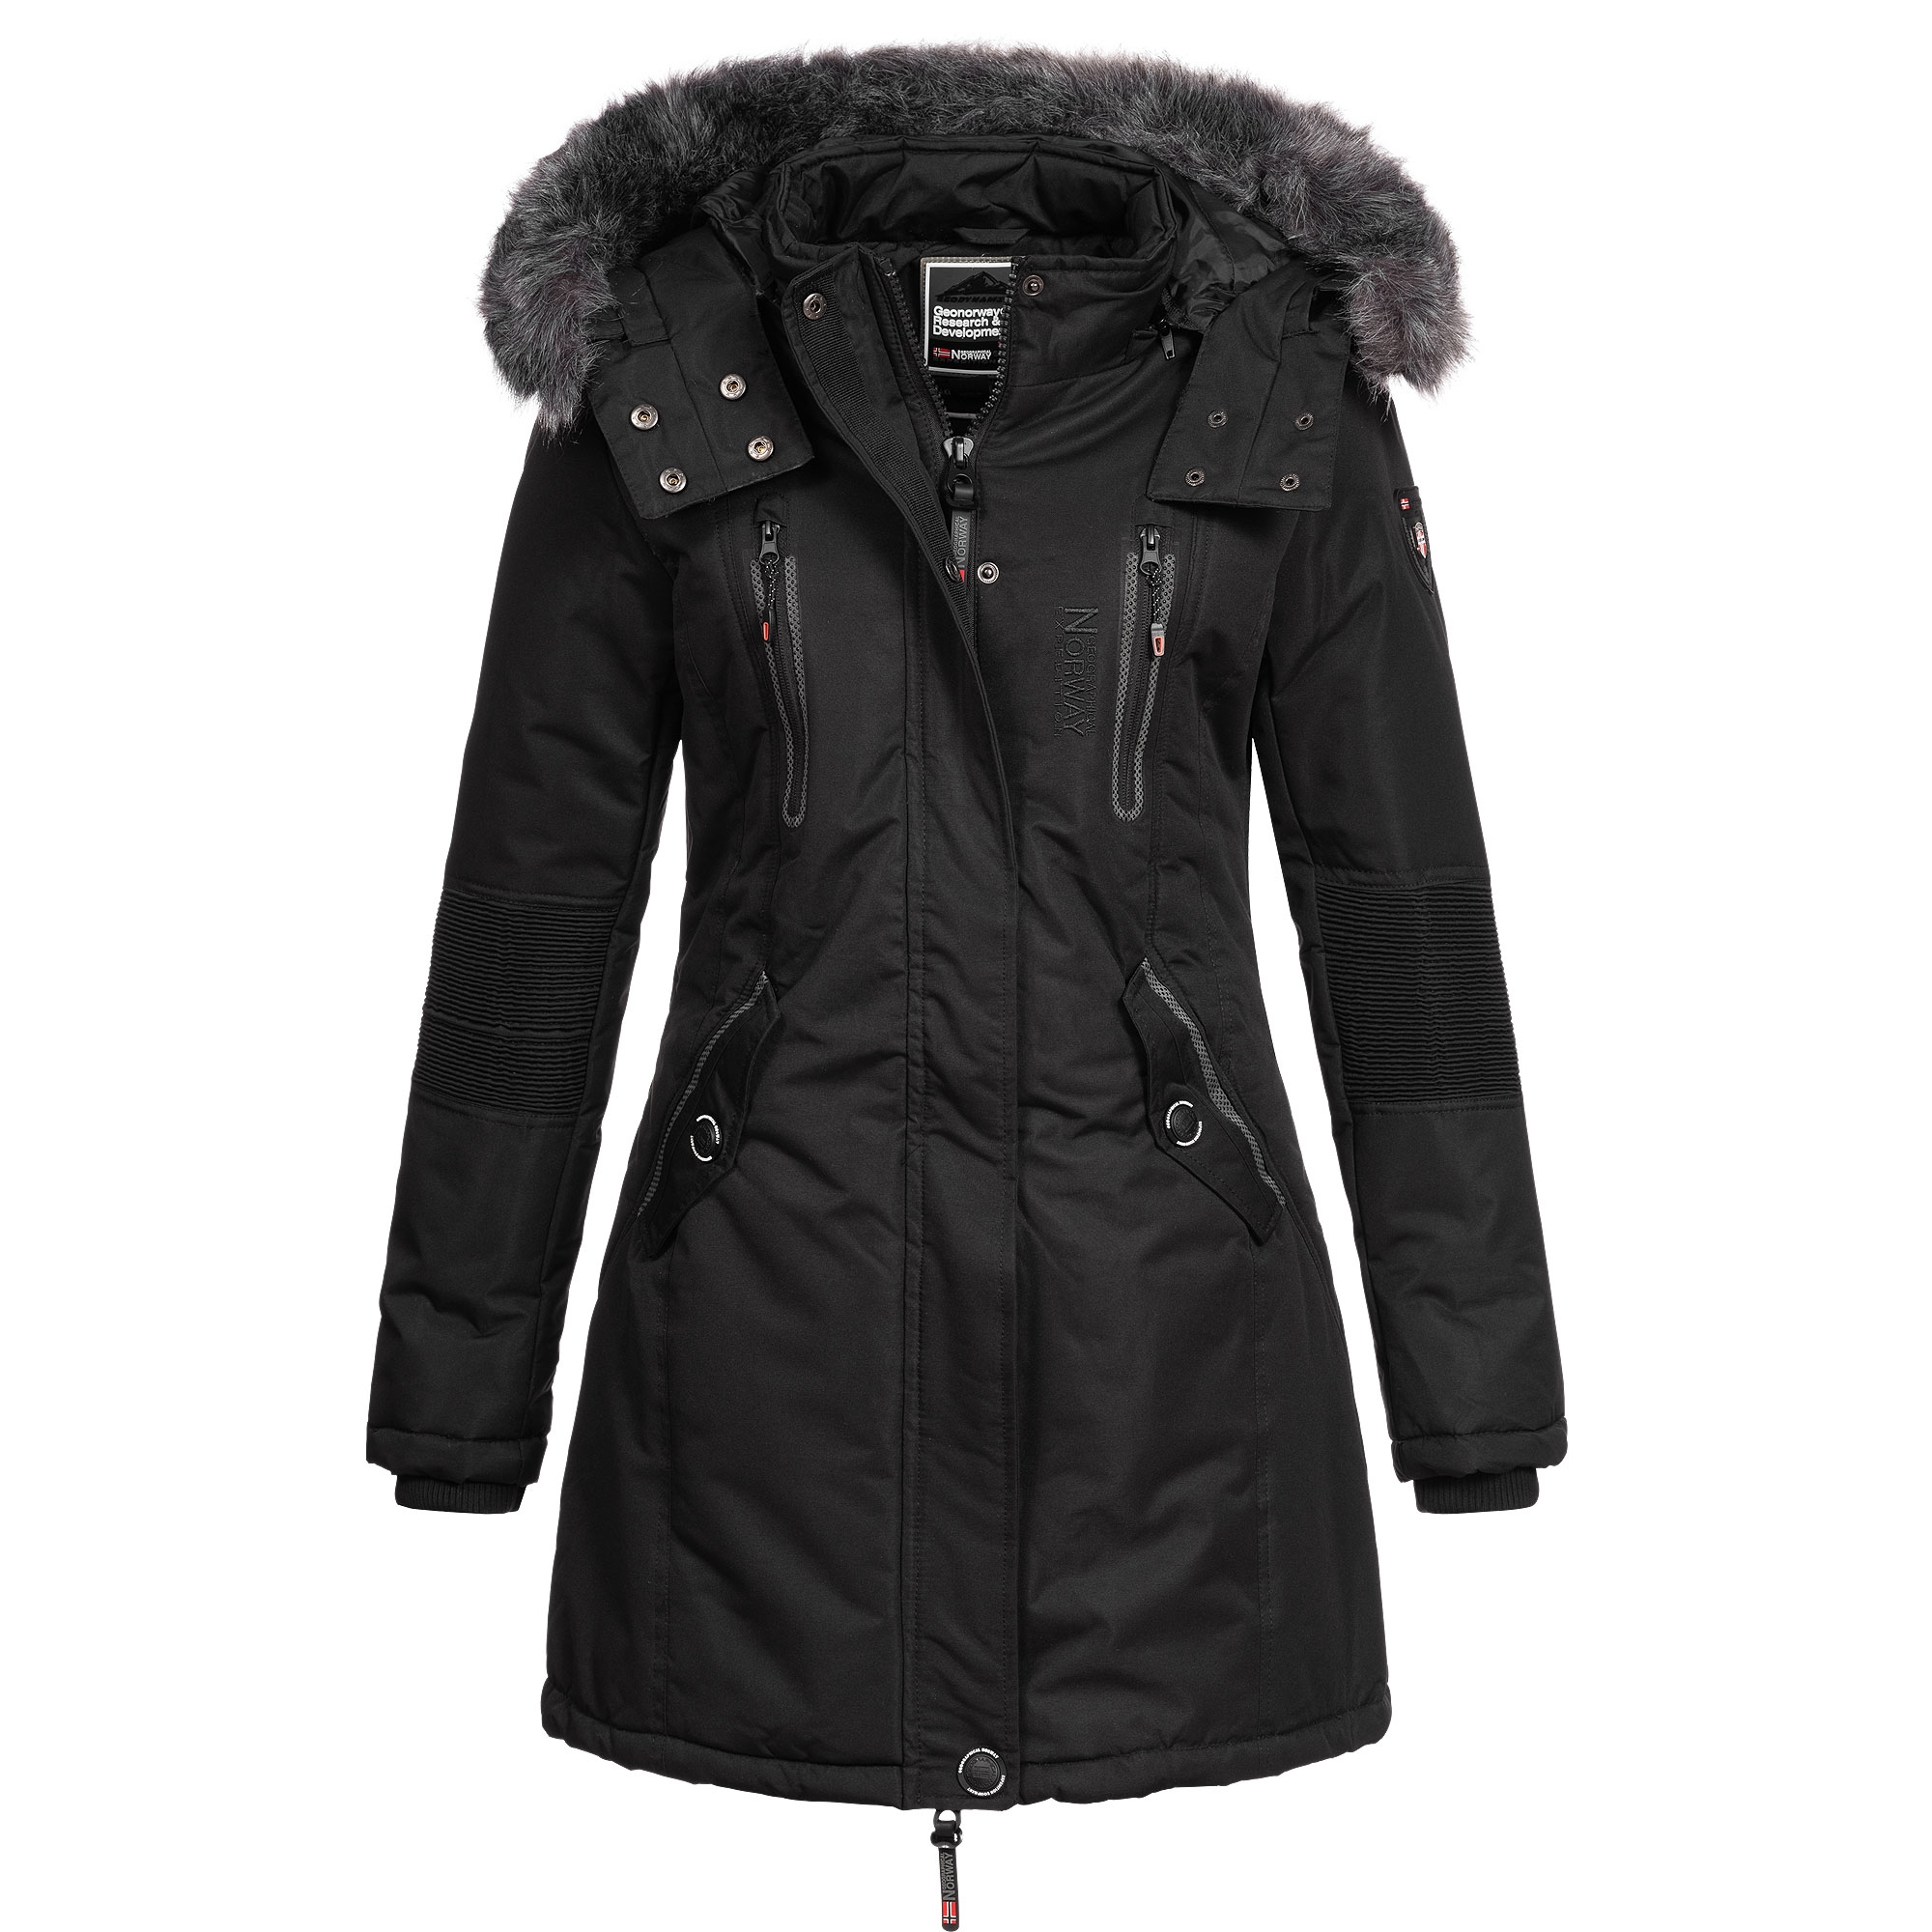 regalo da donna giacca vento invernale Geographical Norway BELANCOLIE LADY cappotto cappuccio pelliccia sintetica Parka caldo da donna giacca corta fodera calda 